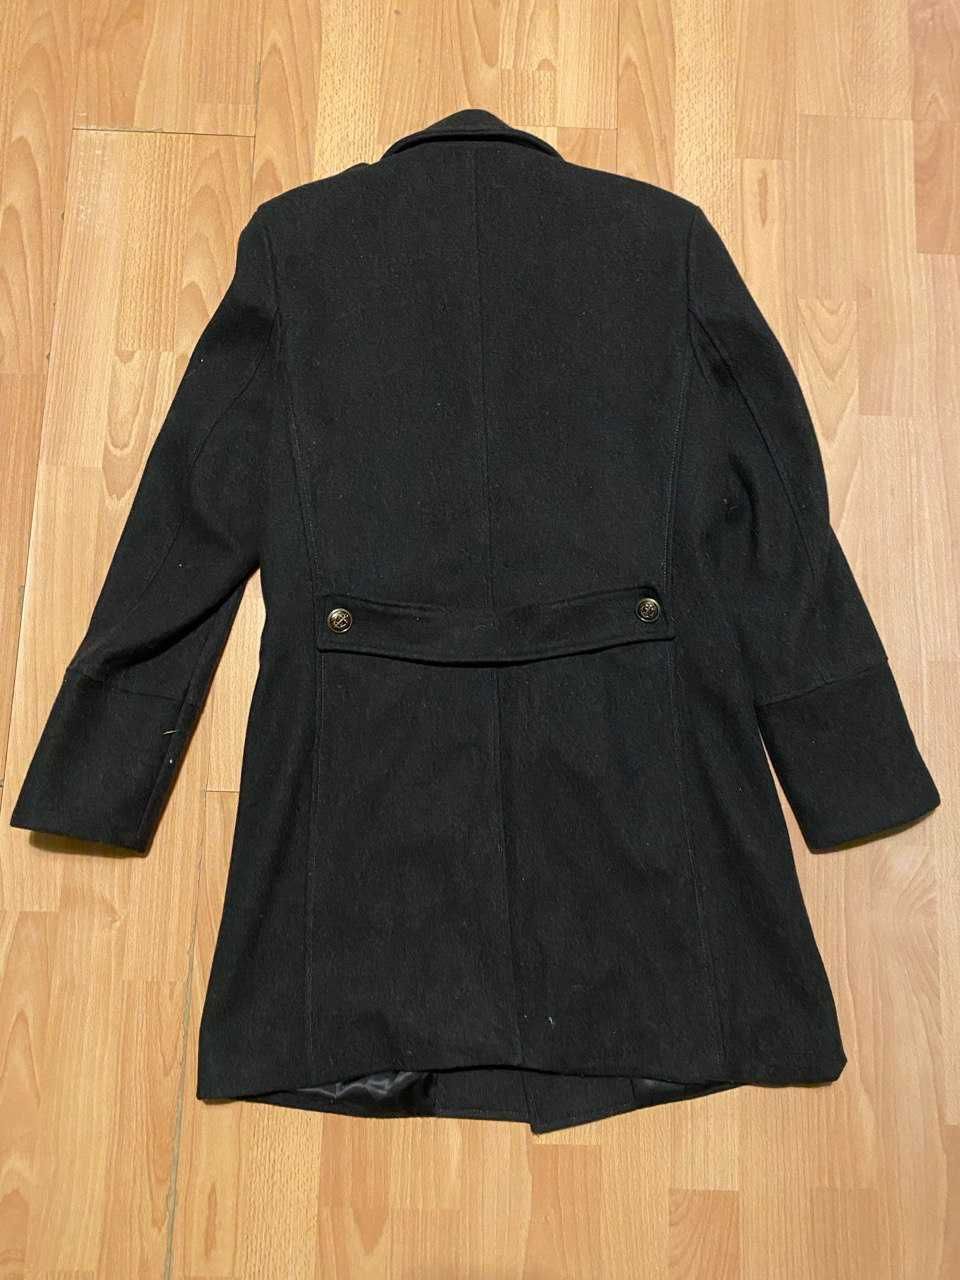 Czarny płaszcz męski wełna model slim M/L